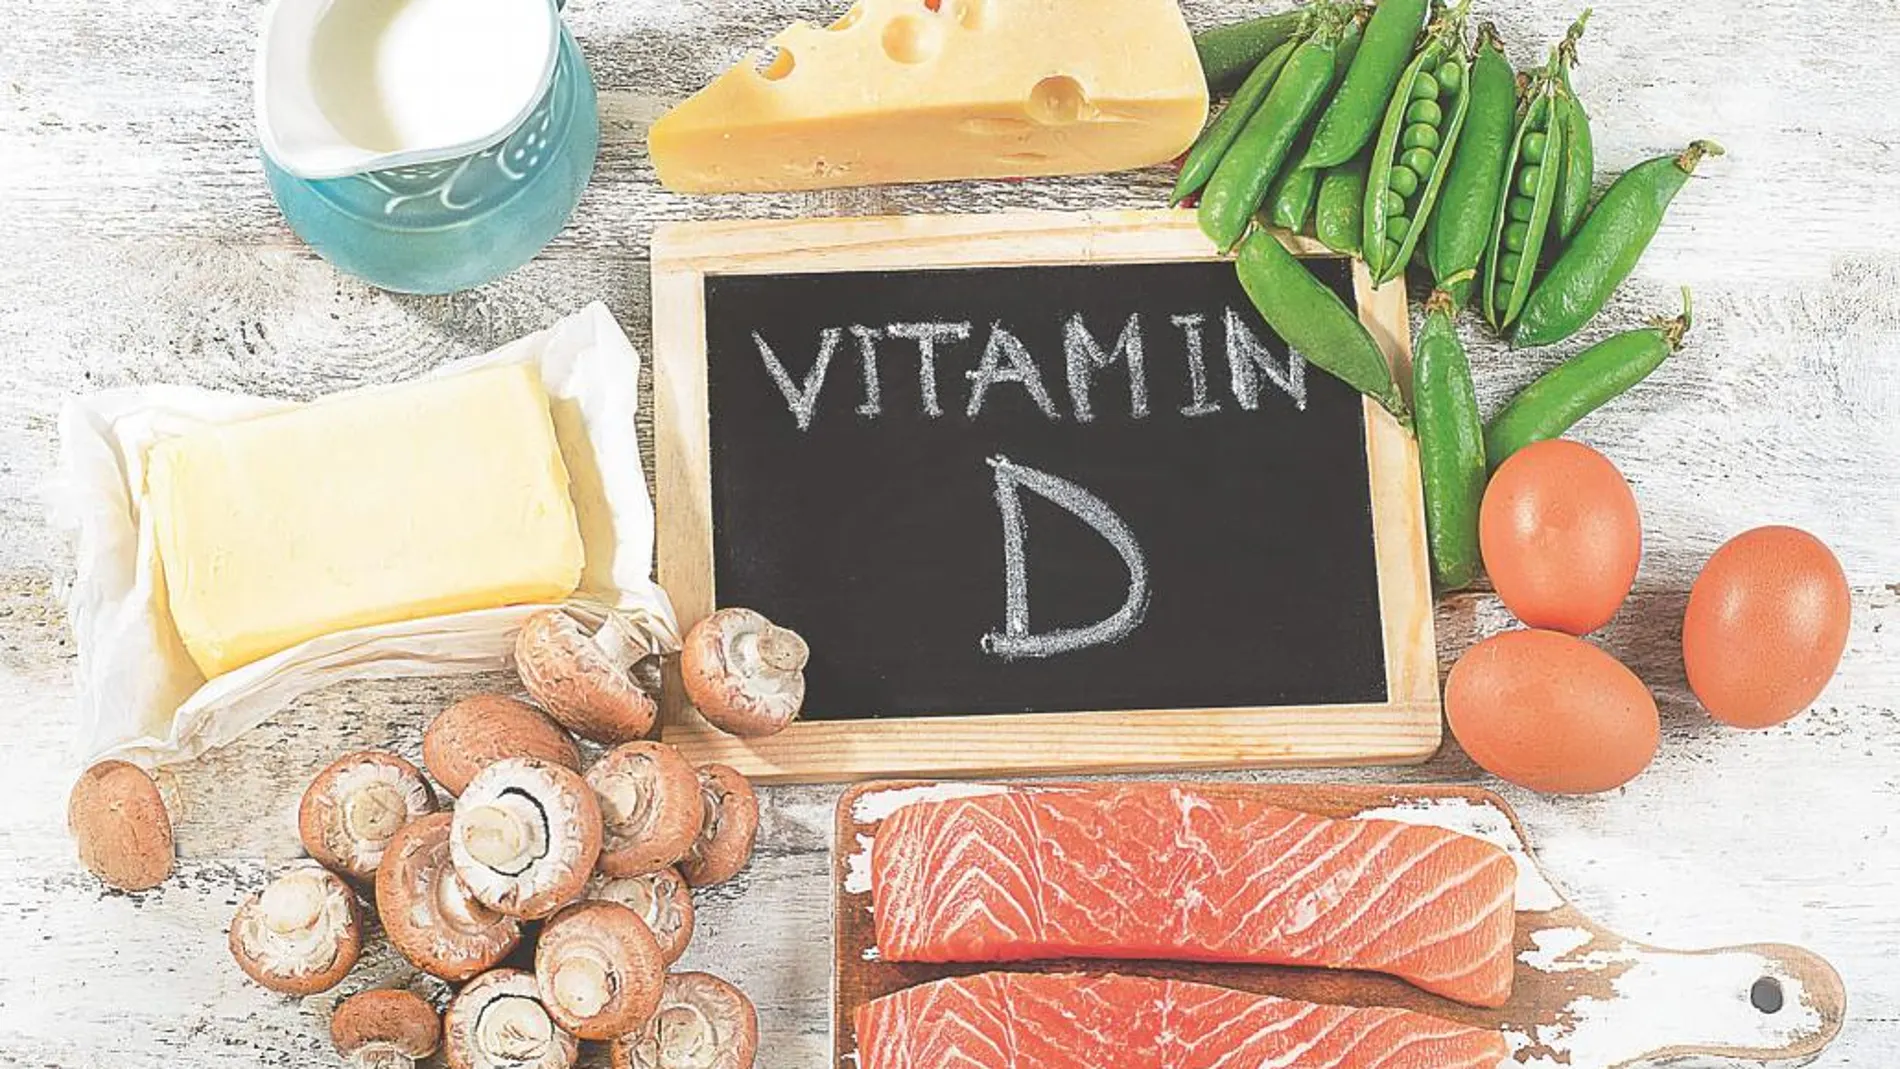 Hígado y pescado garantizan el aporte necesario de vitamina D a través de la dieta